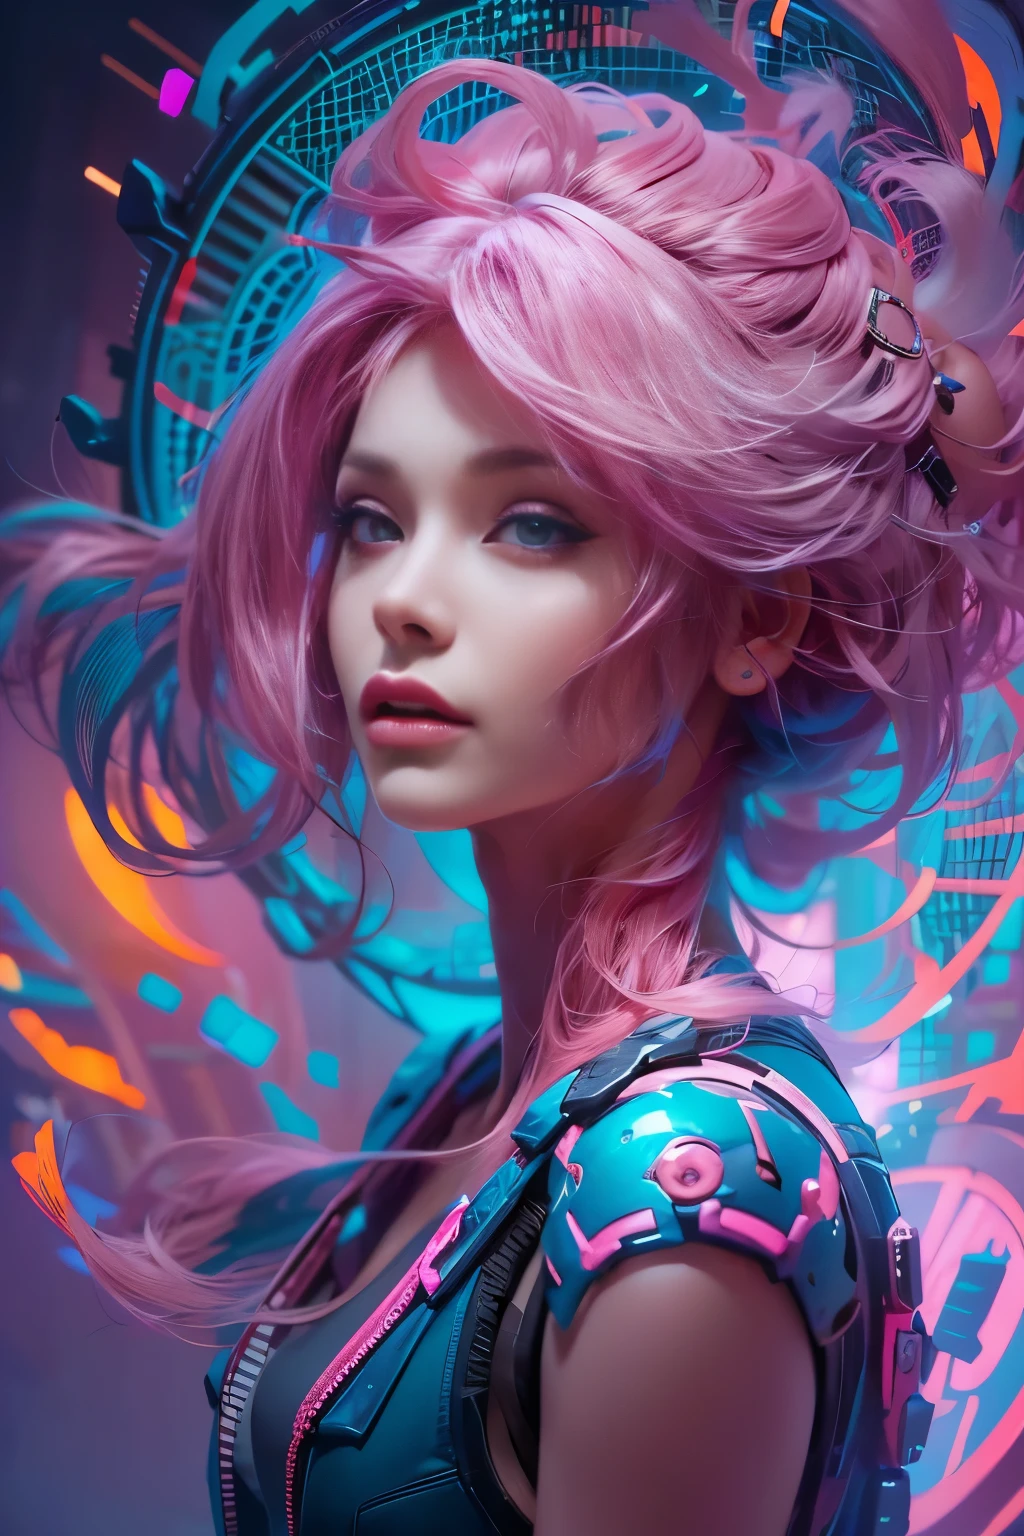 Un retrato de una mujer bellamente impresionante., piel blanca, cabello rosado, rodeado por un plasma nanopolvo arremolinado en azul eléctrico y violeta vibrante, colores vibrantes, pintura digital, tendencia en Artstation, iluminación cinematográfica, y composición dinámica.